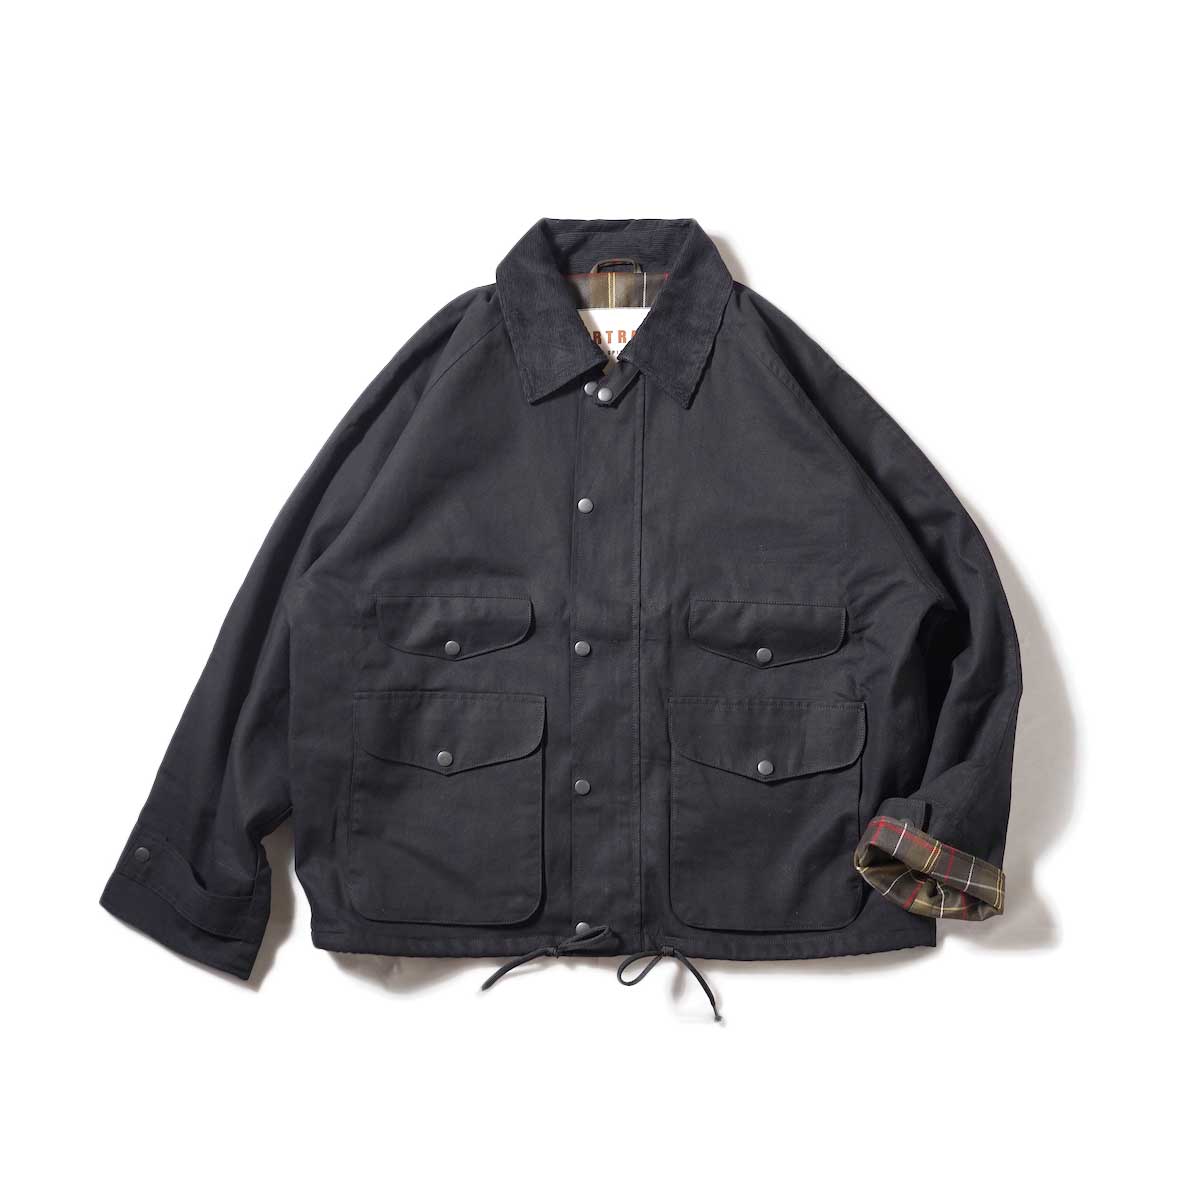 PORTRAITE / Classic Field Jacket Short - Canvas (Black)